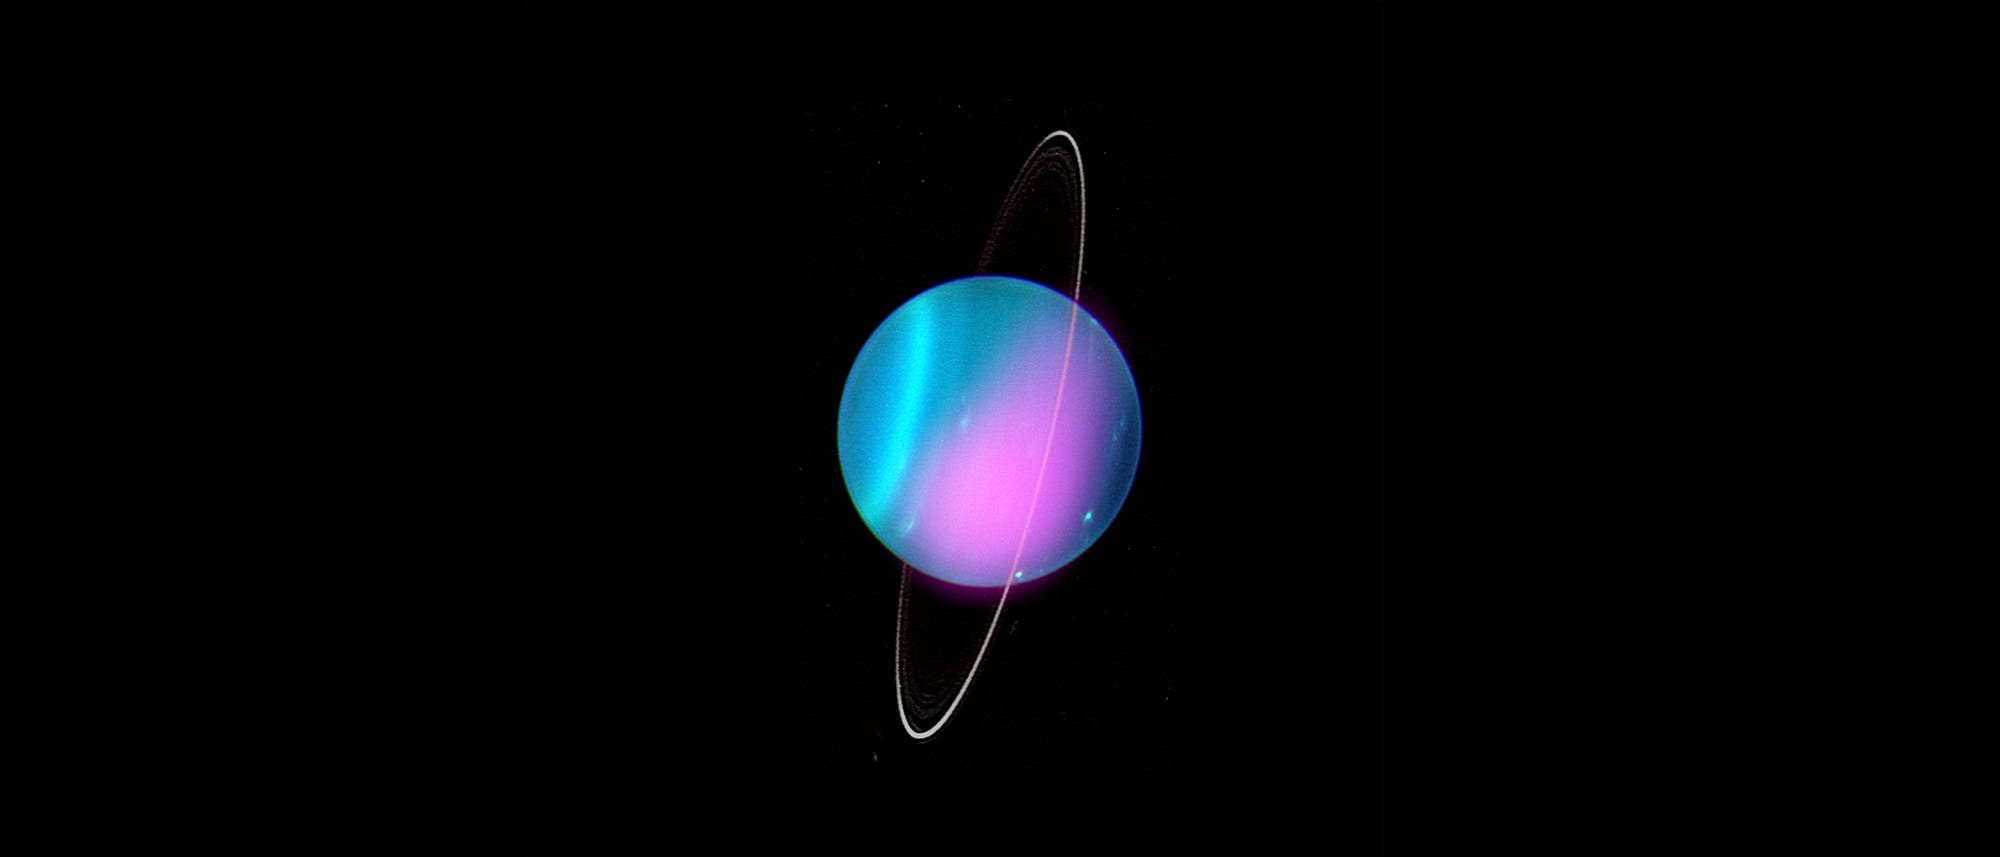 Der Planet Uranus liegt auf der Seite.